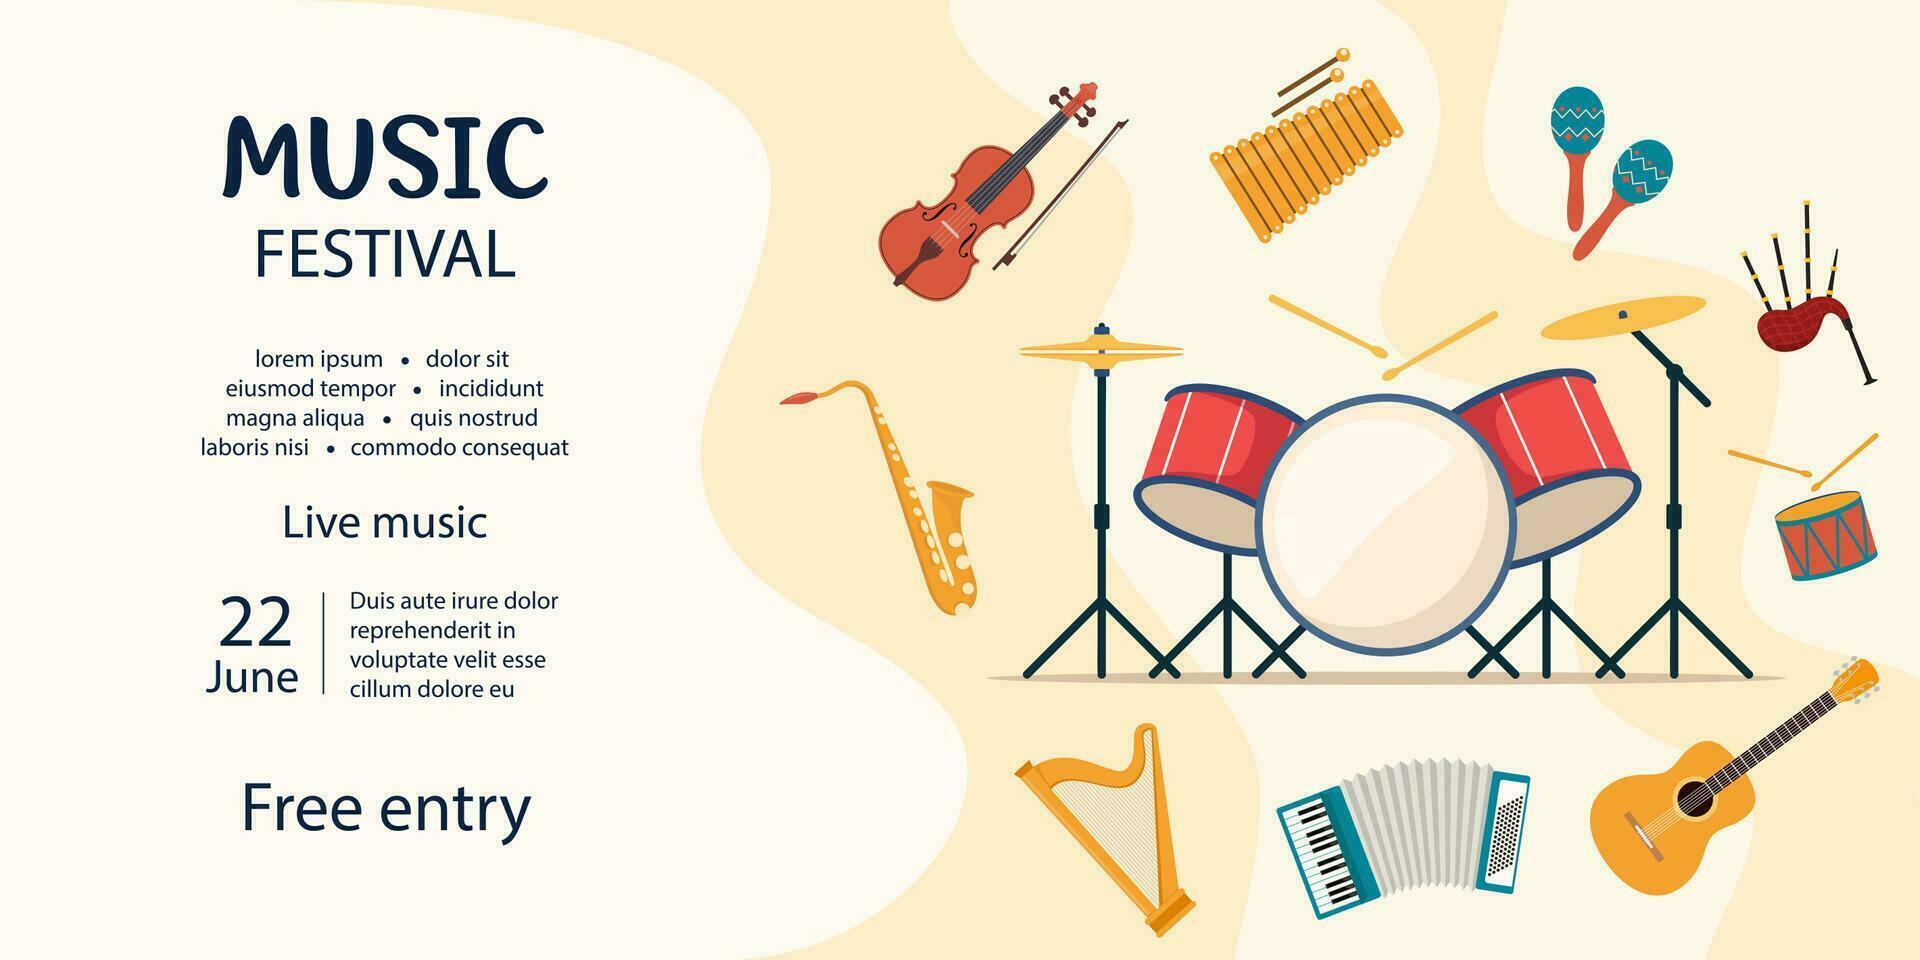 musik festival inbjudan. musikalisk instrument. gitarr, fiol, harpa, cymbal, maracas, gitarr, trumma utrustning, säckpipa, saxofon. vektor illustration.